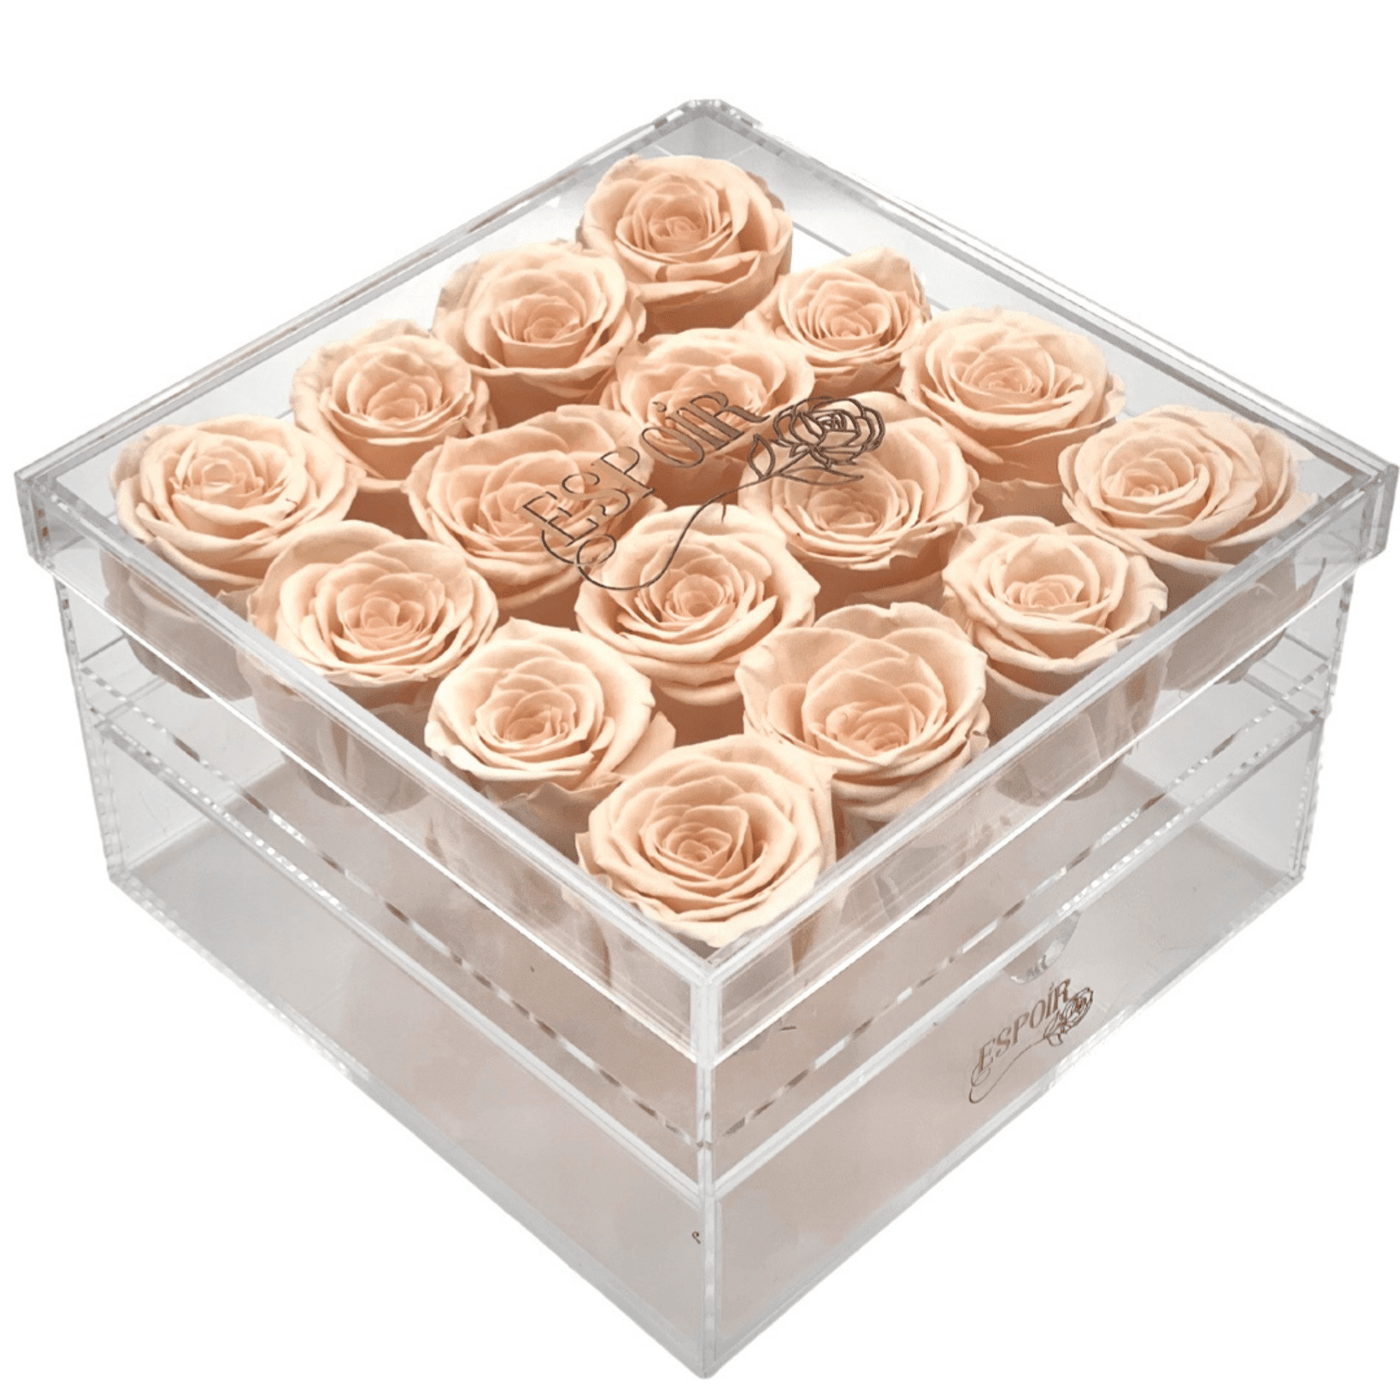 Acrylic Keepsake Square - 16 roses